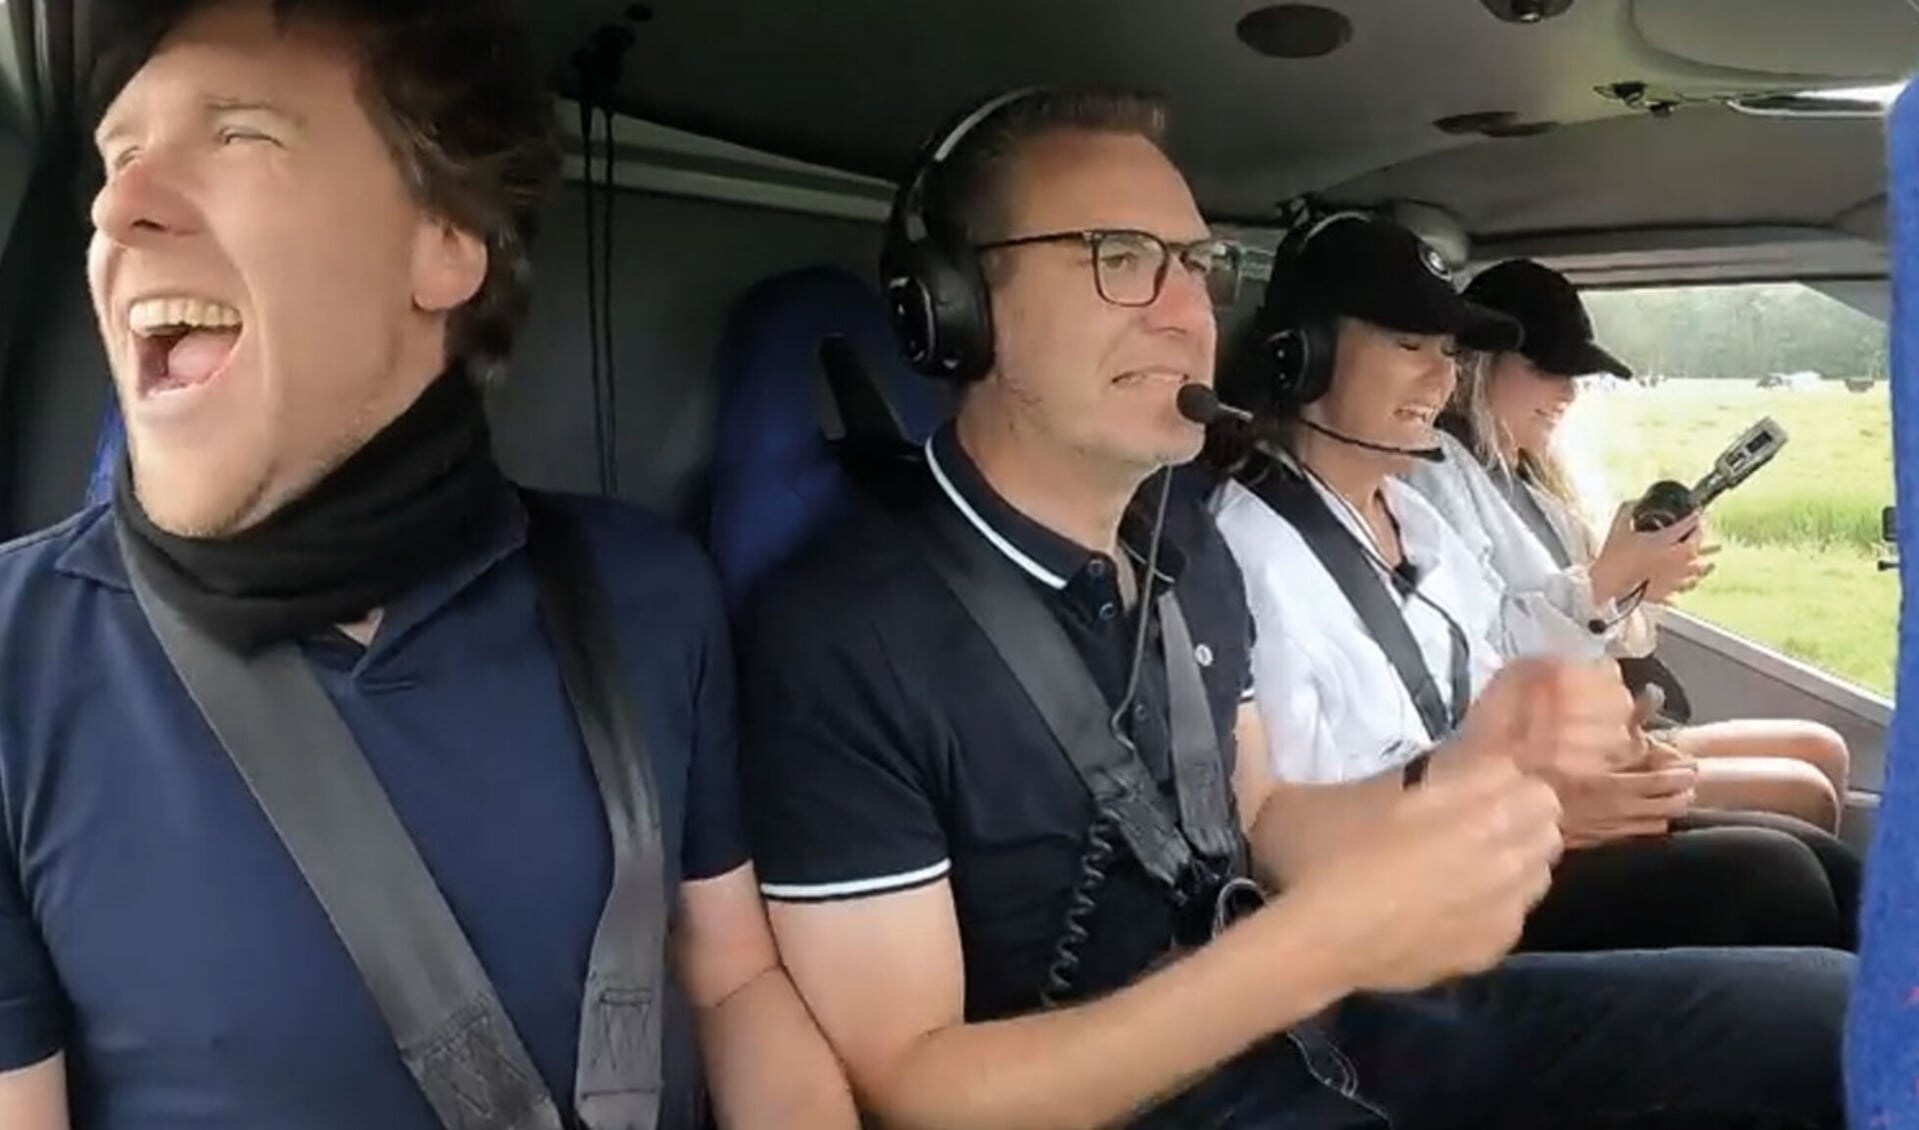 De vier kandidaten zijn 'veilig' nadat ze de helikopter in Baarn hebben bereikt. 